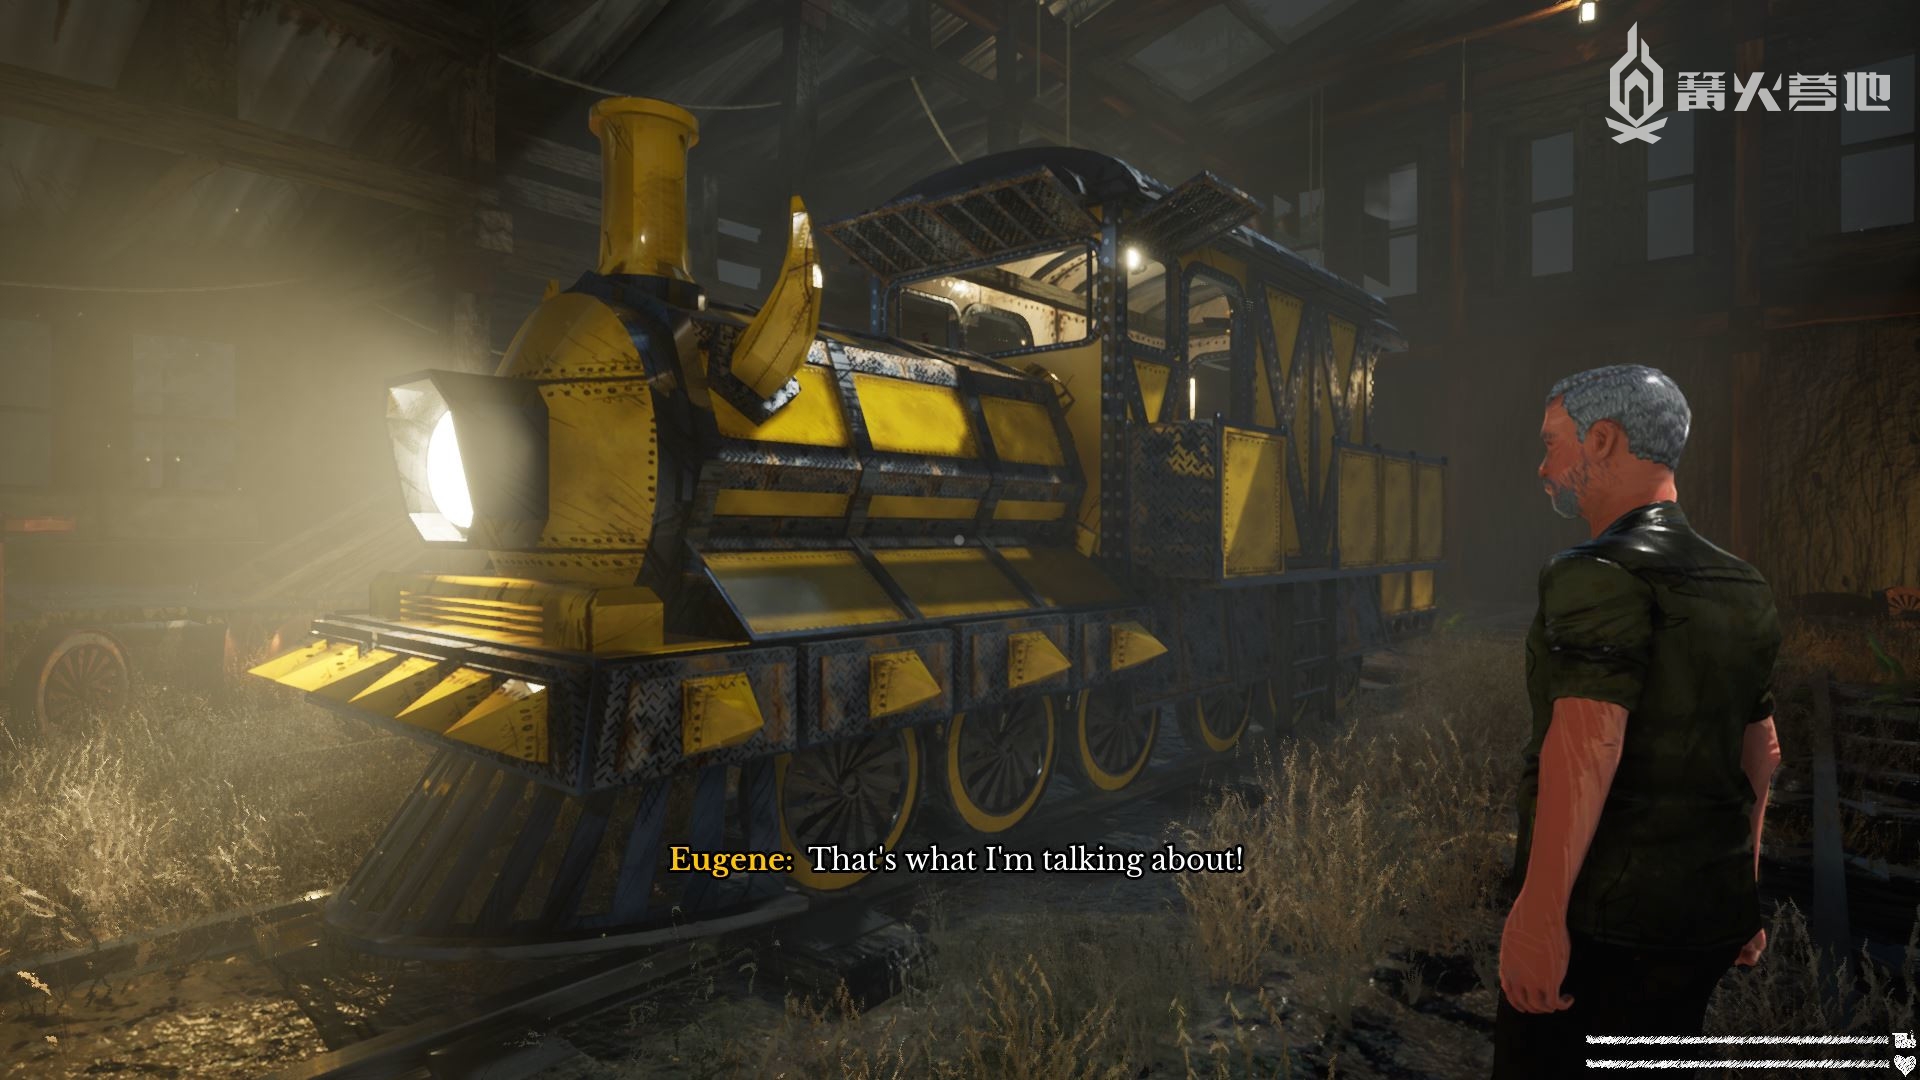 恐怖列车游戏《小火车查尔斯》12 月 9 日发售 Steam 版